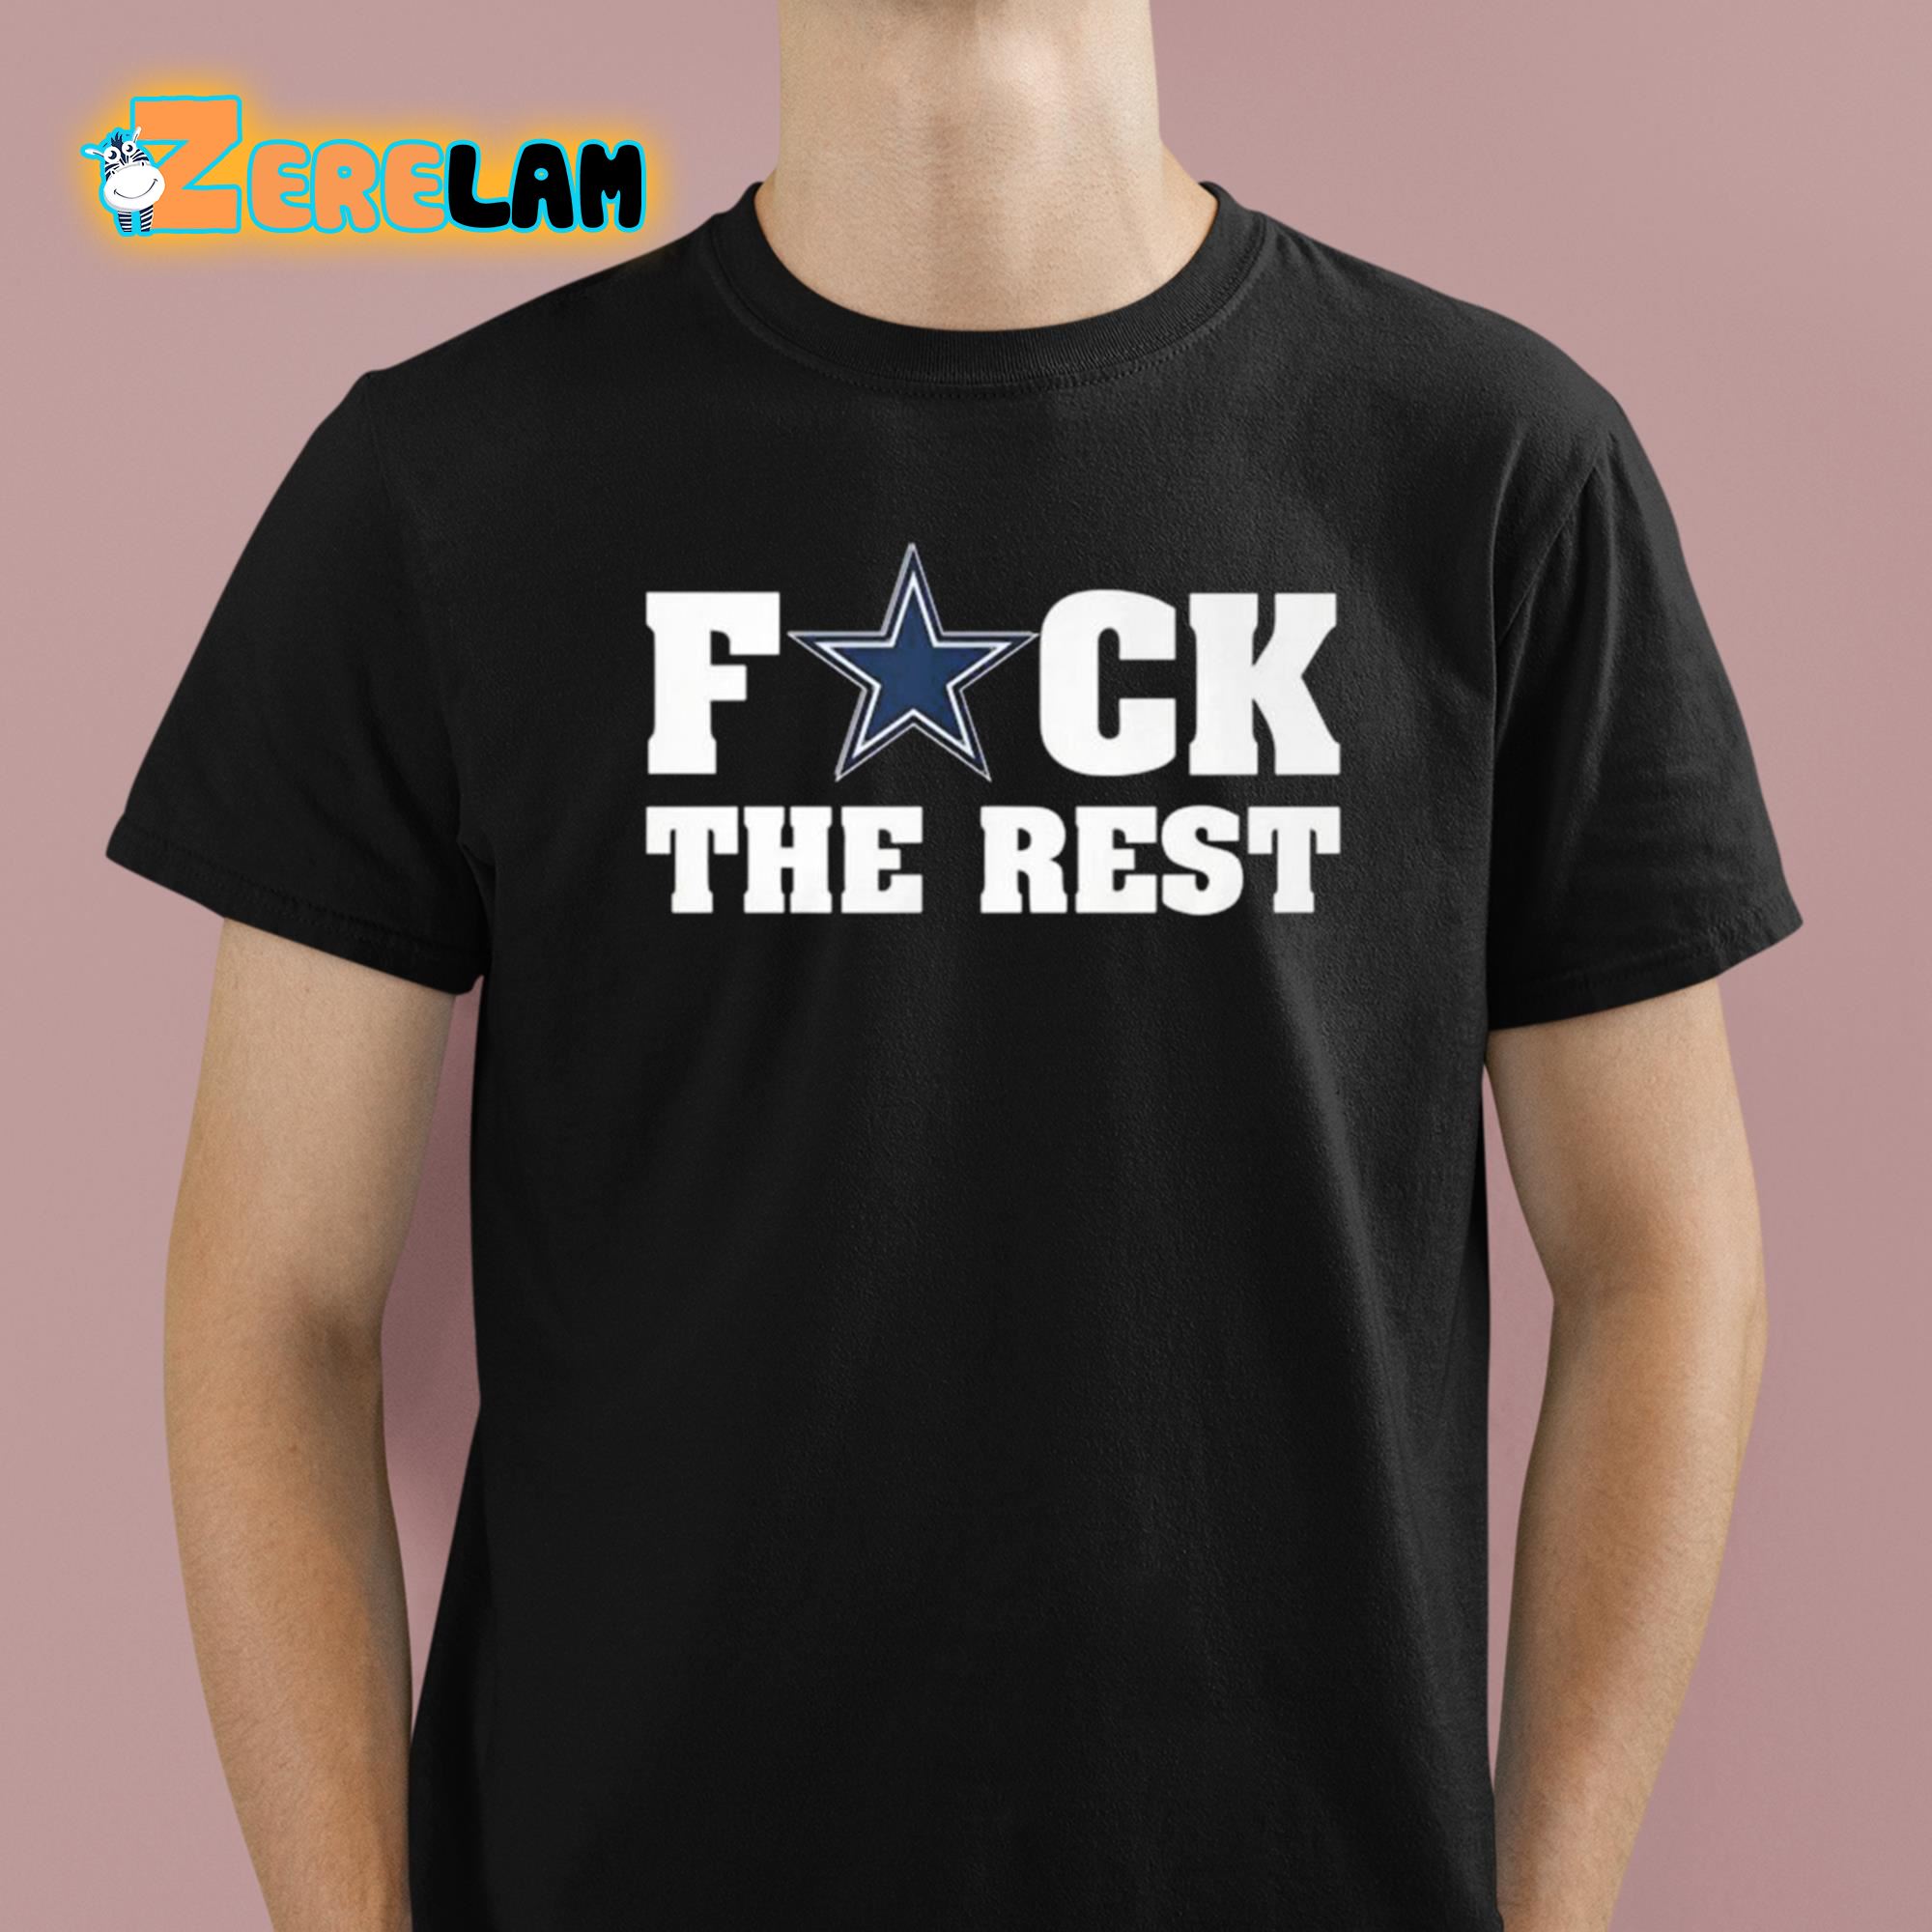 Fuck Dallas The Rest Shirt 1 1